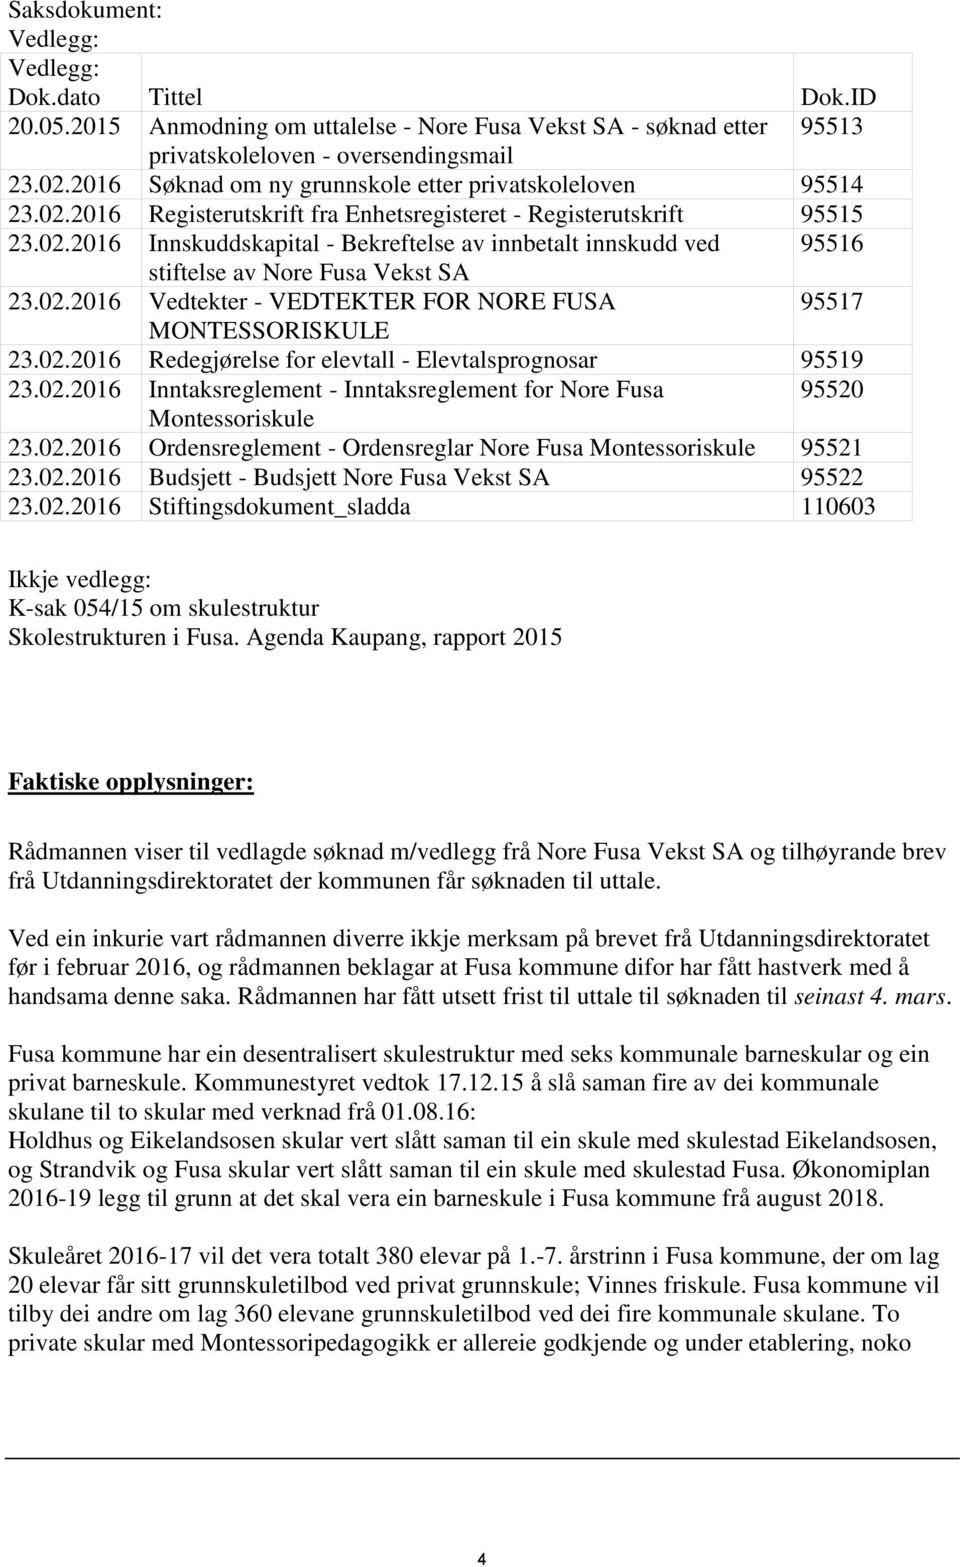 02.2016 Vedtekter - VEDTEKTER FOR NORE FUSA 95517 MONTESSORISKULE 23.02.2016 Redegjørelse for elevtall - Elevtalsprognosar 95519 23.02.2016 Inntaksreglement - Inntaksreglement for Nore Fusa 95520 Montessoriskule 23.